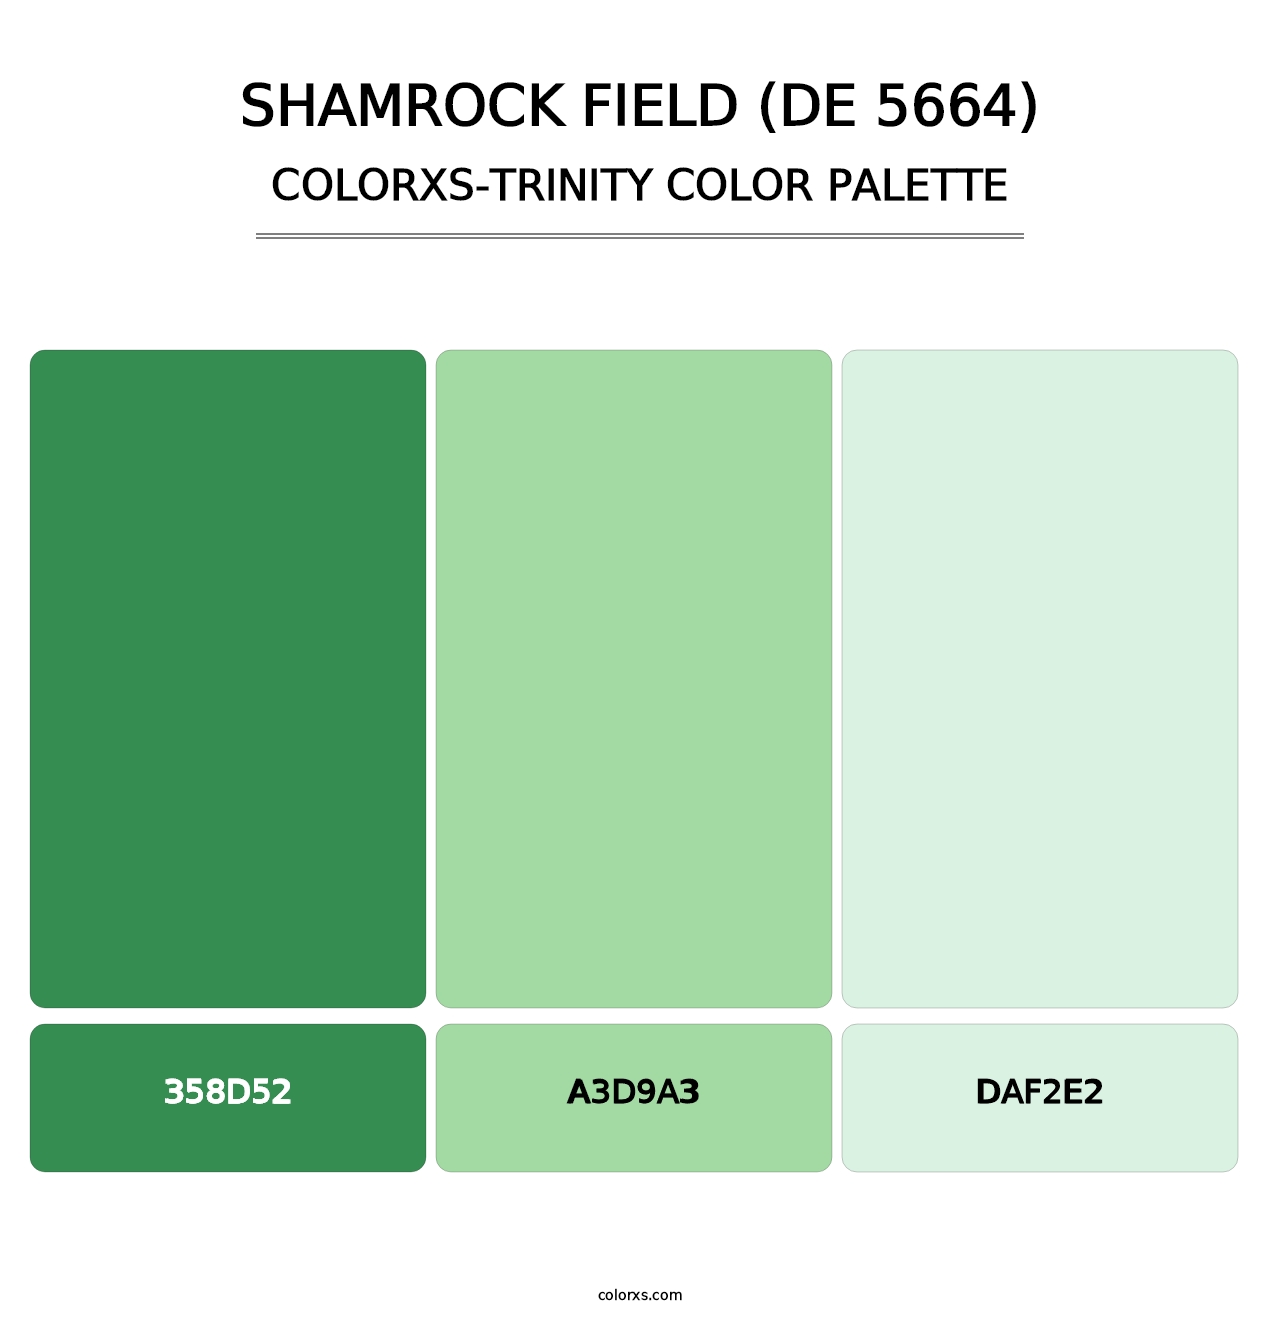 Shamrock Field (DE 5664) - Colorxs Trinity Palette